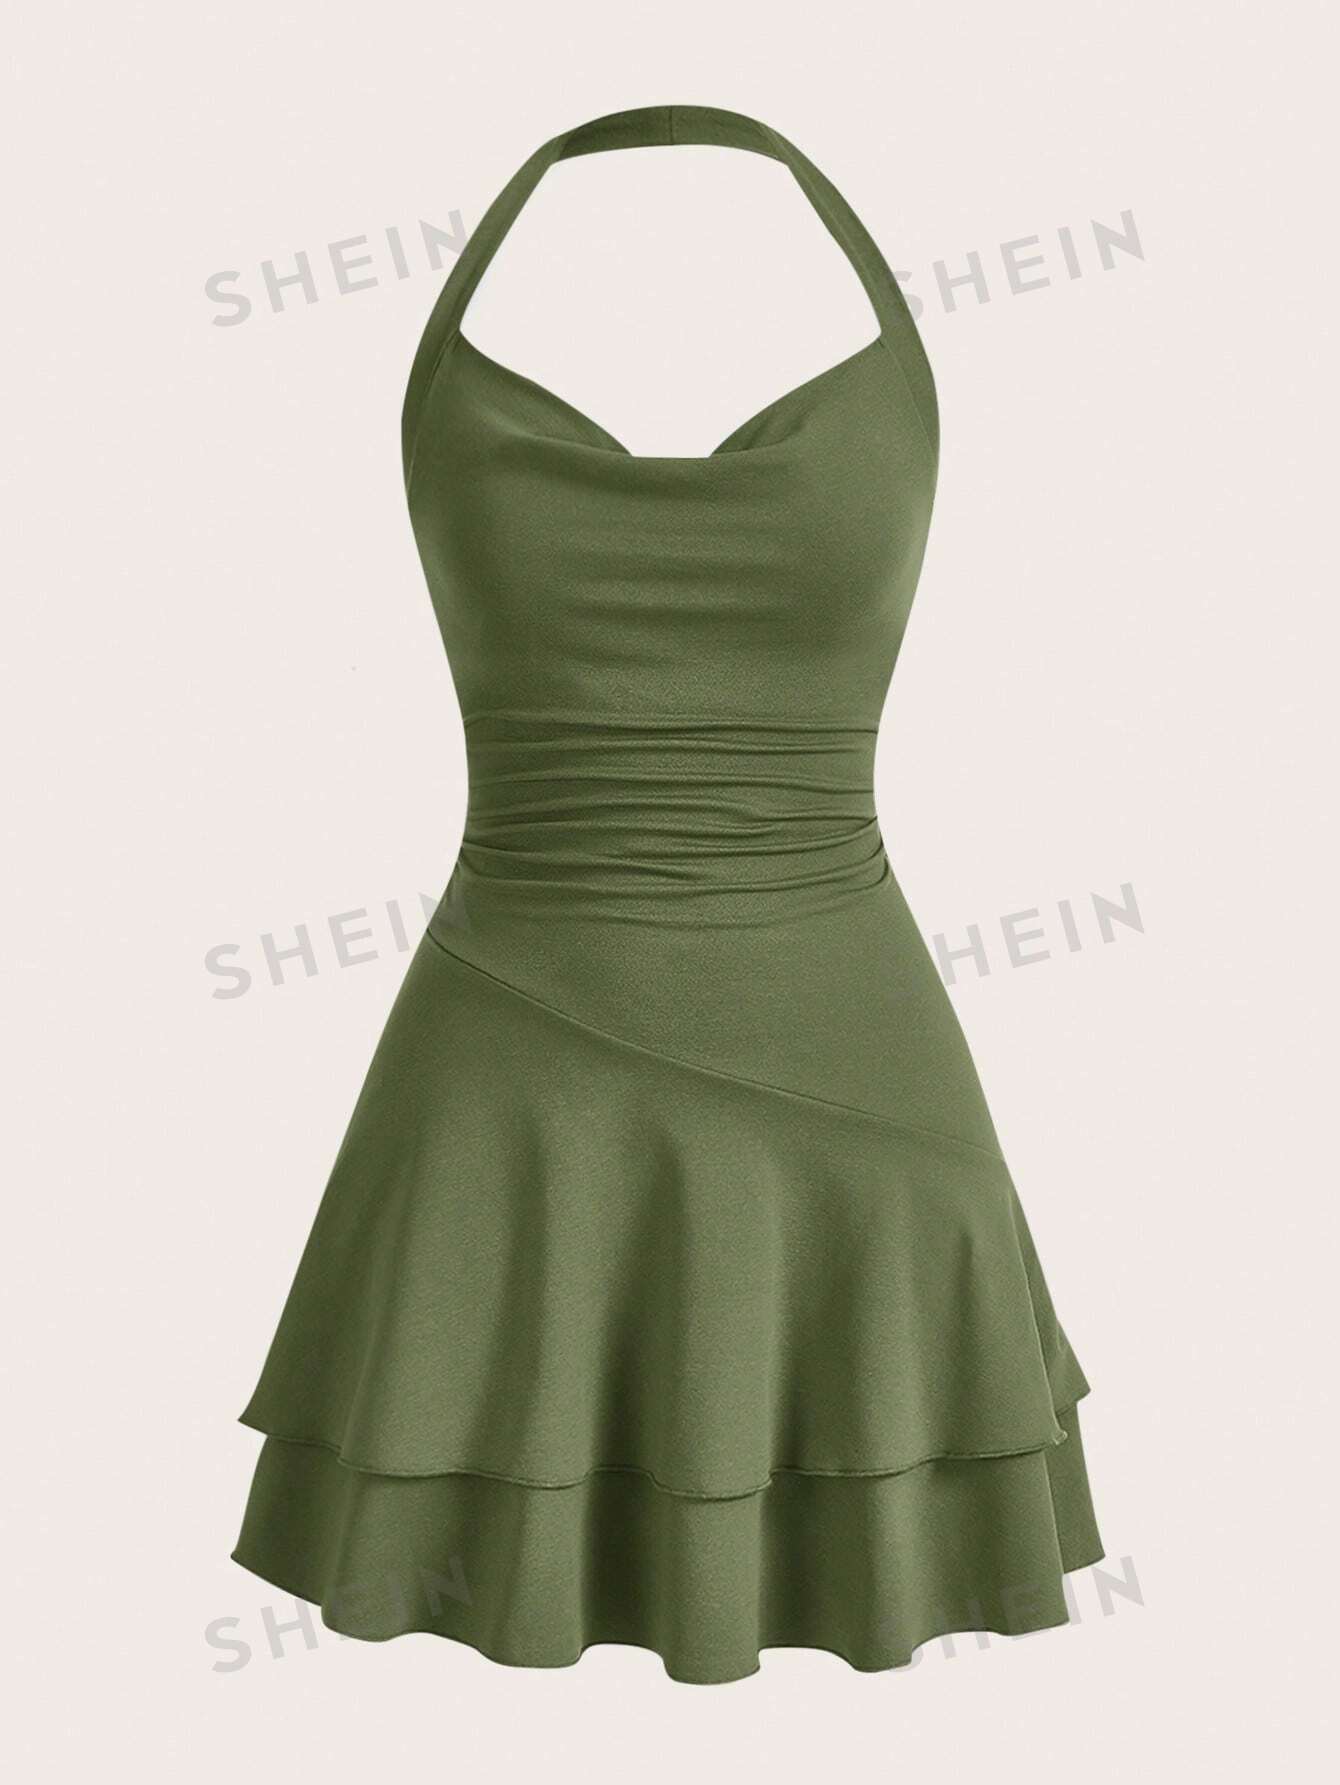 SHEIN MOD однотонное женское платье с бретелькой на шее и многослойным подолом, армейский зеленый платье mothercare вязаное на 9 10 лет